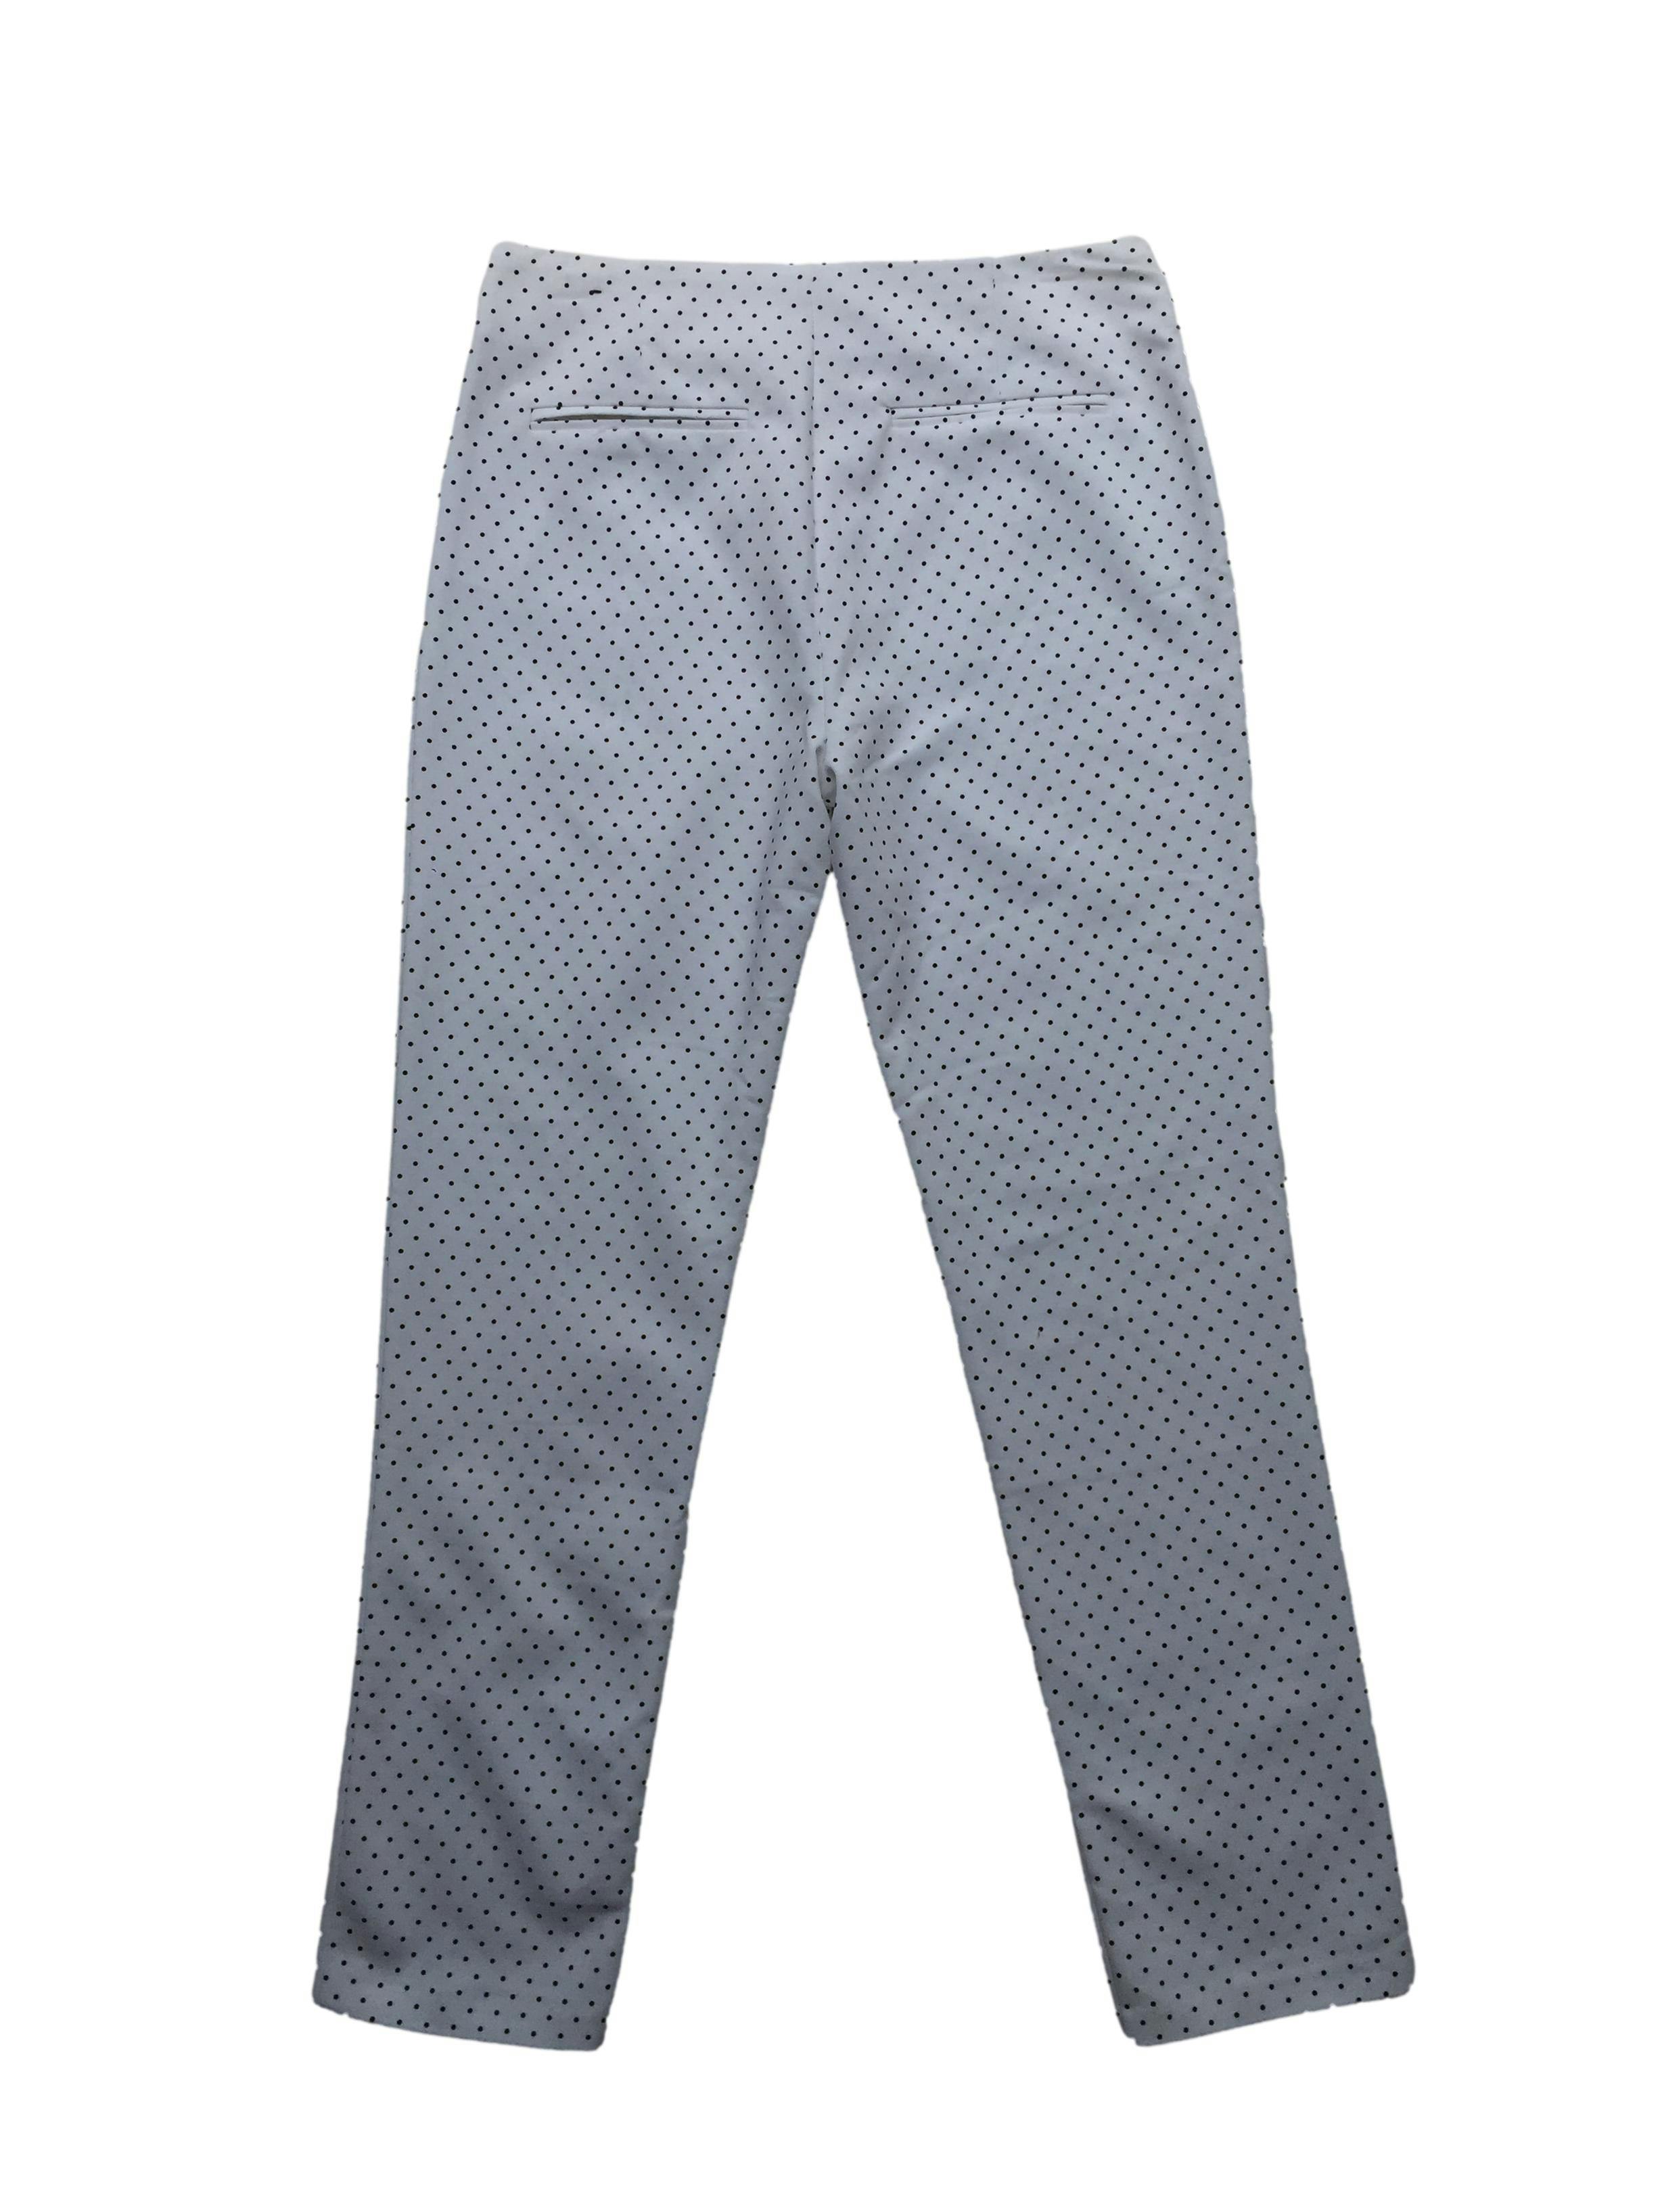 Pantalón Basement blanco con polka dots negros, aplicación de cierres, corte slim ligeramente stetch. Cintura 80cm Tiro 27cm Largo 95cm